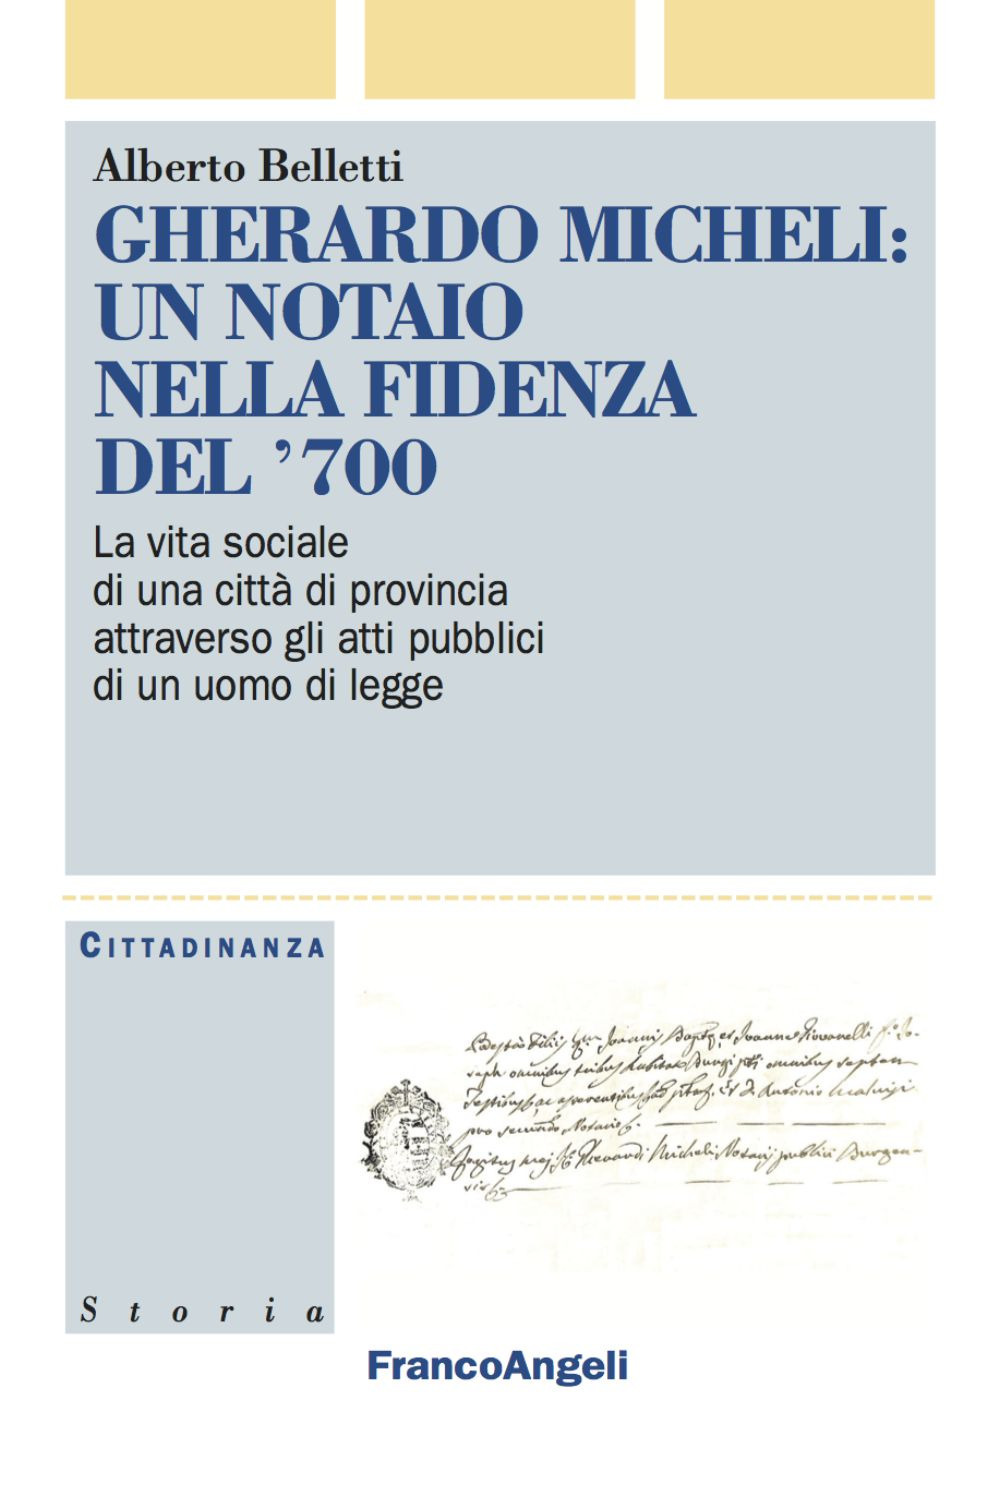 Image of Gherardo Micheli: un notaio nella Fidenza del '700. La vita sociale di una città di provincia attraverso gli atti pubblici di un uomo di legge